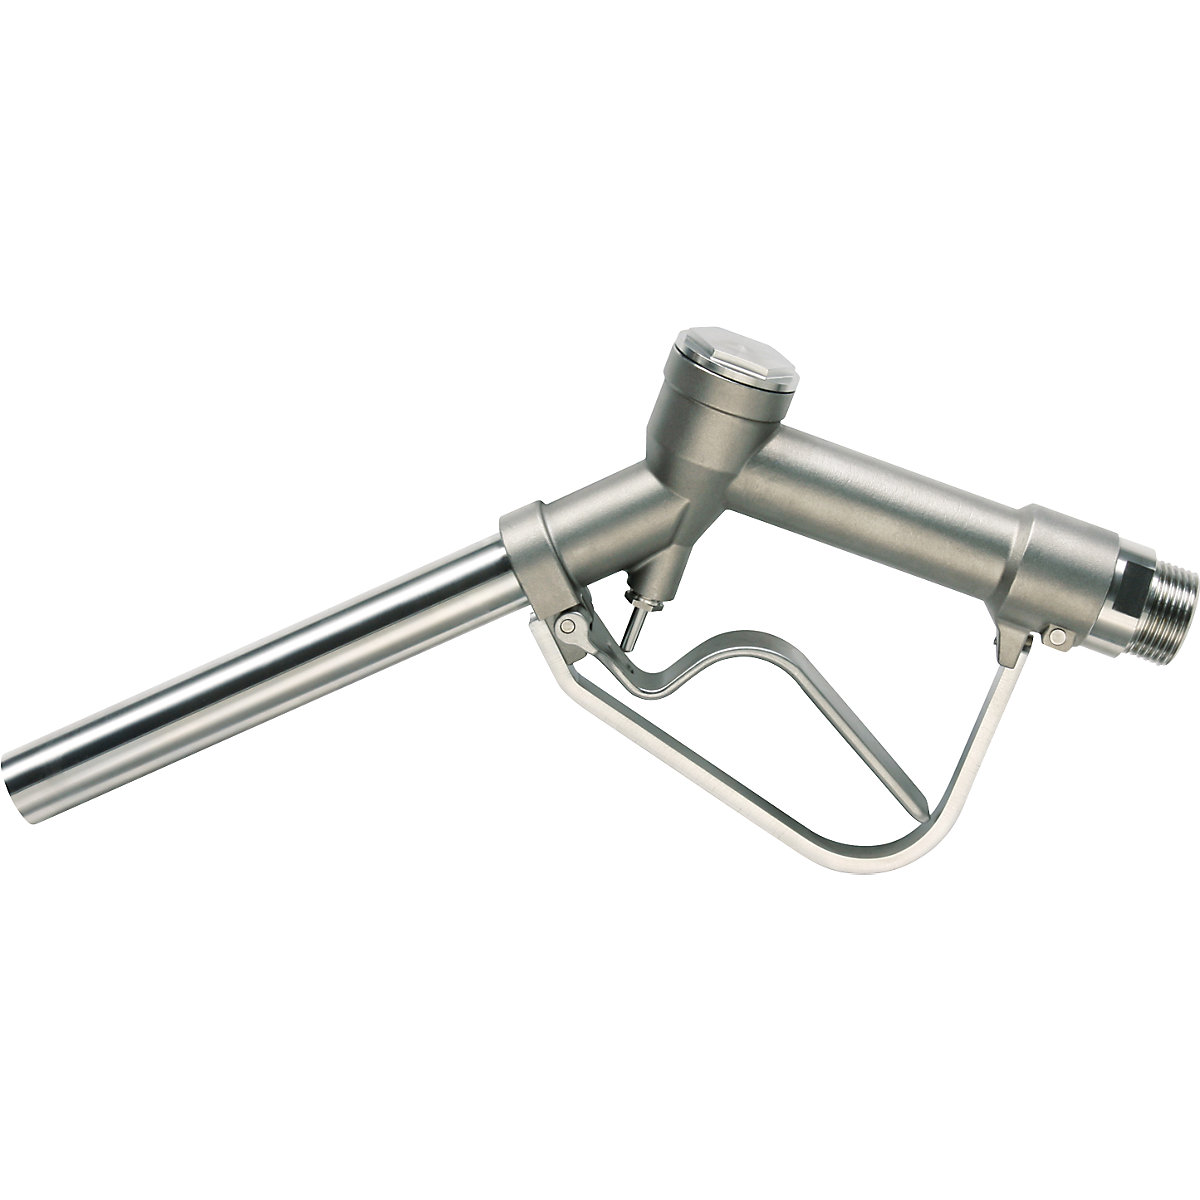 Pistola de distribuição manual em aço inoxidável 1.4571 – Jessberger